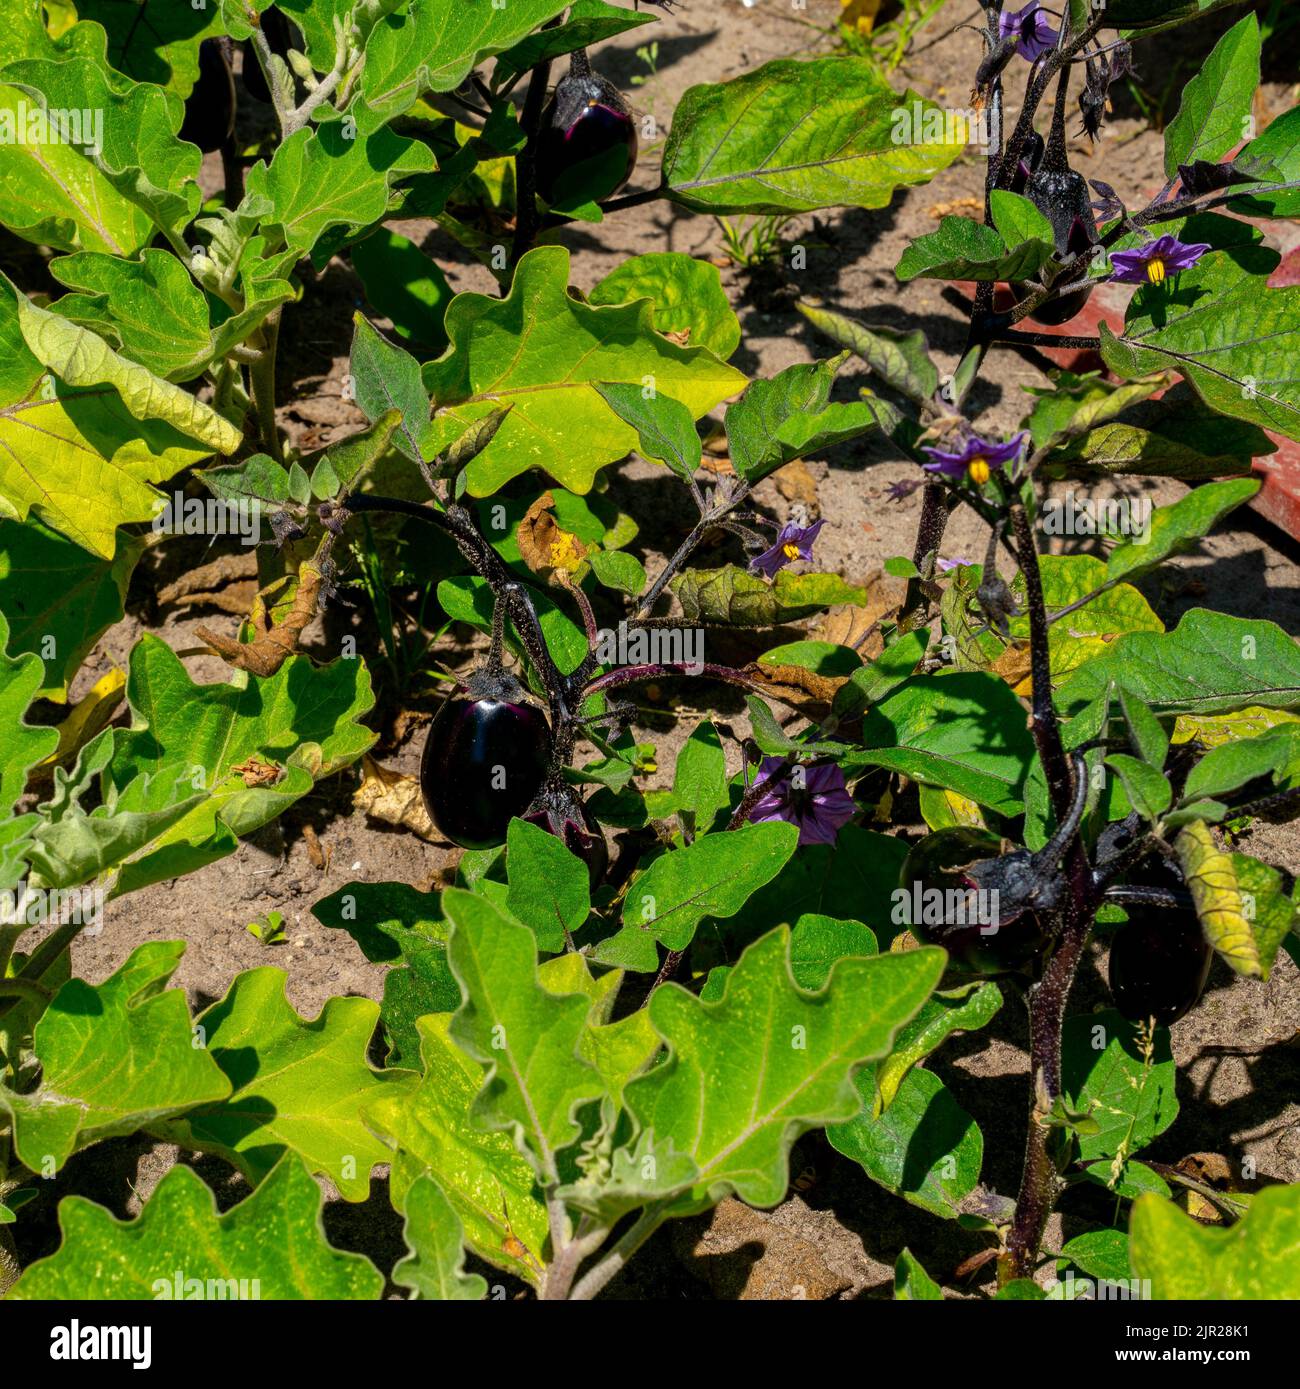 Primo piano di una melanzana con fiori e frutti (Solanum melongena) Foto Stock